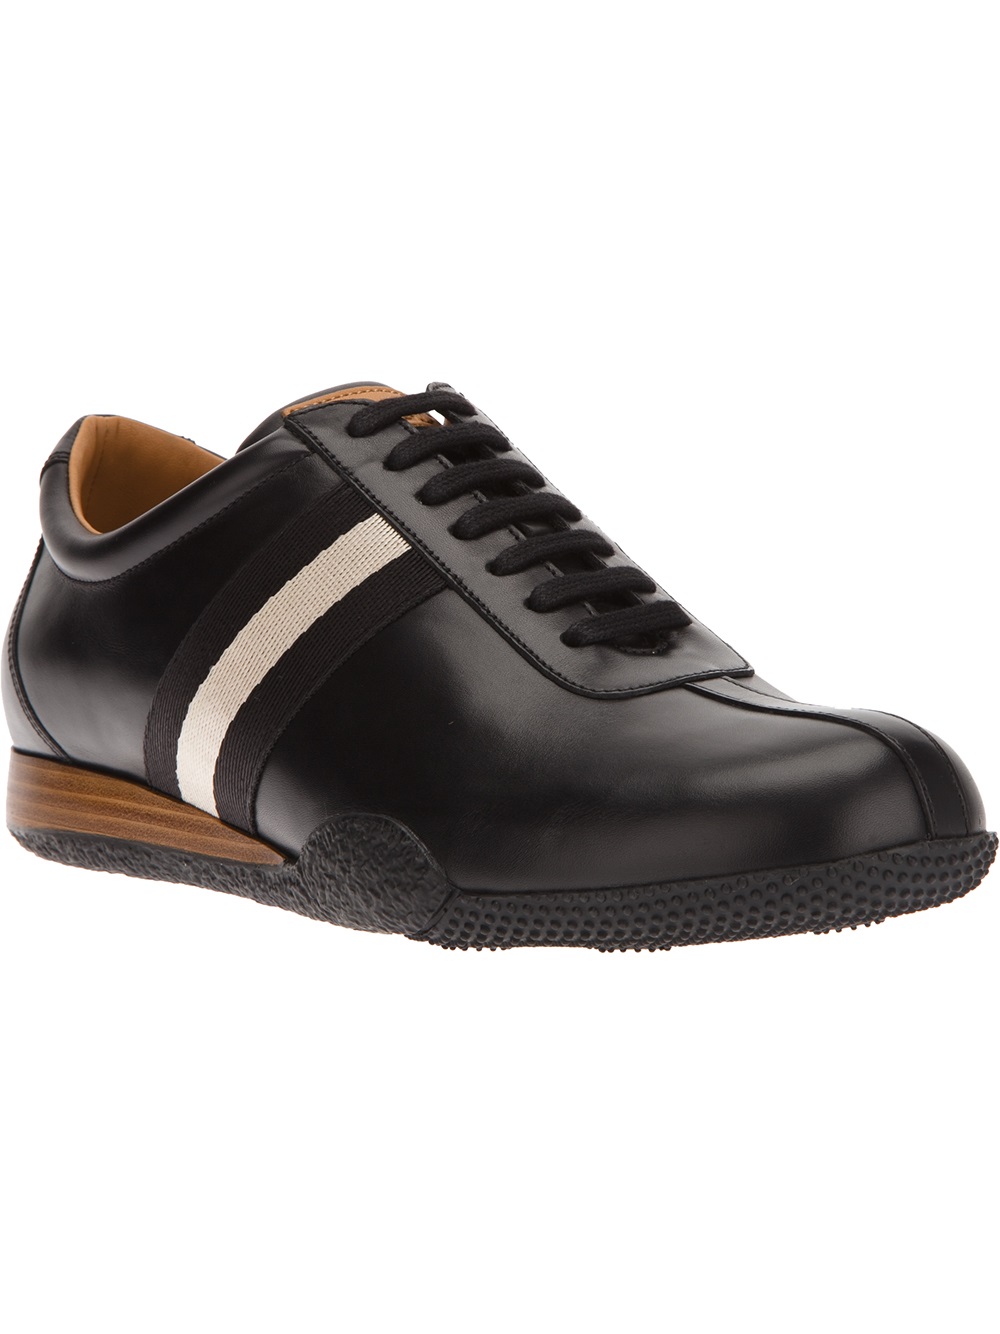 Bally Freenew Shoe in Black for Men - Lyst